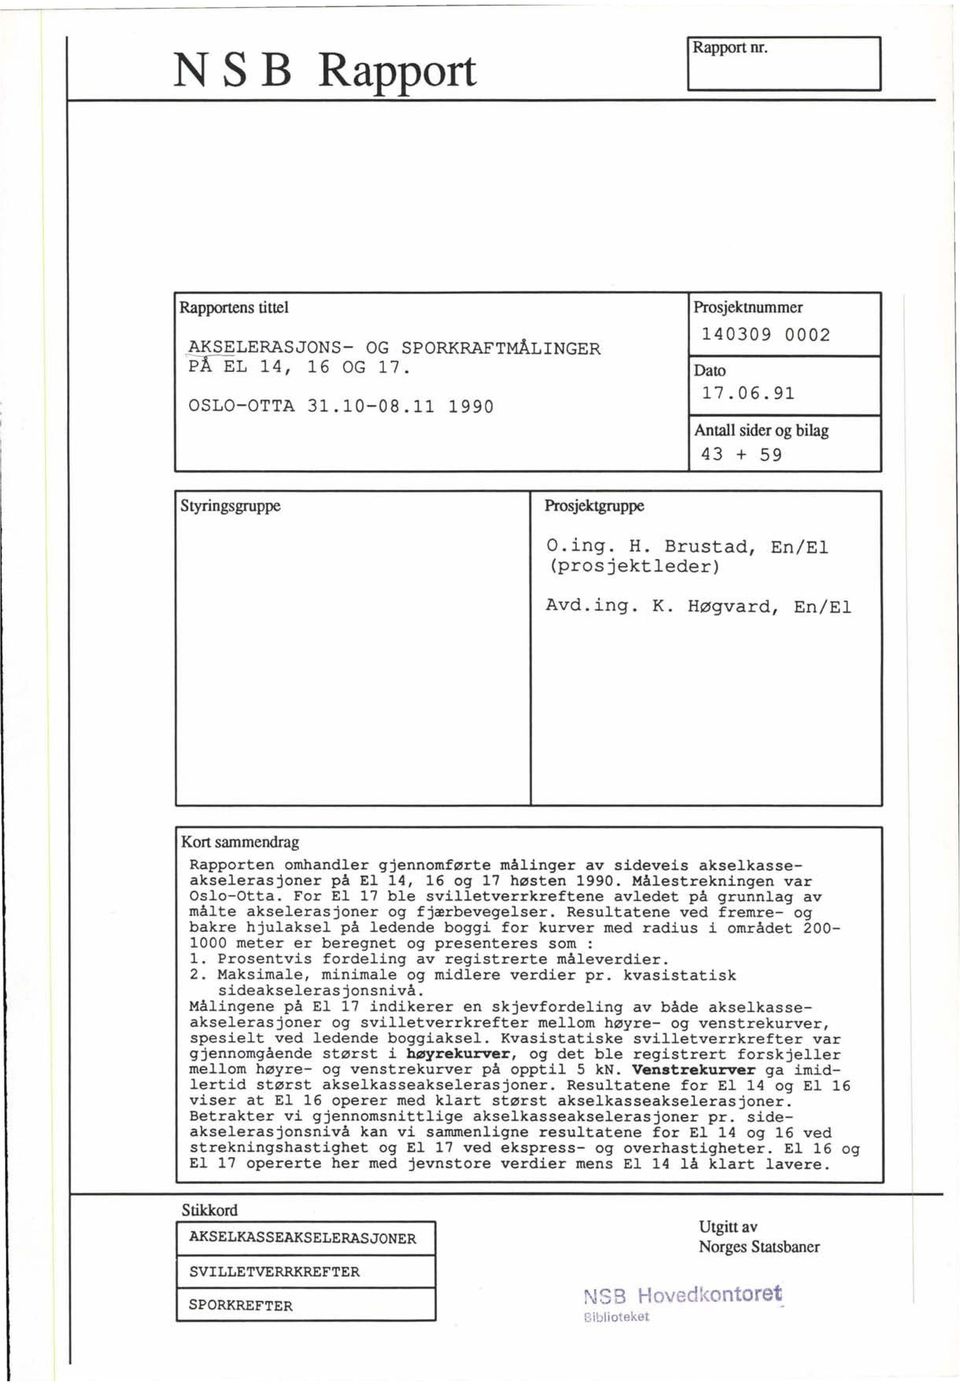 Høgvard, En/El Kort sammendrag Rapporten omhandler gjennomførte målinger av sideveis akselkasseakselerasjoner på El 1, 16 og 17 høsten 1990. Målestrekningen var slo-tta.